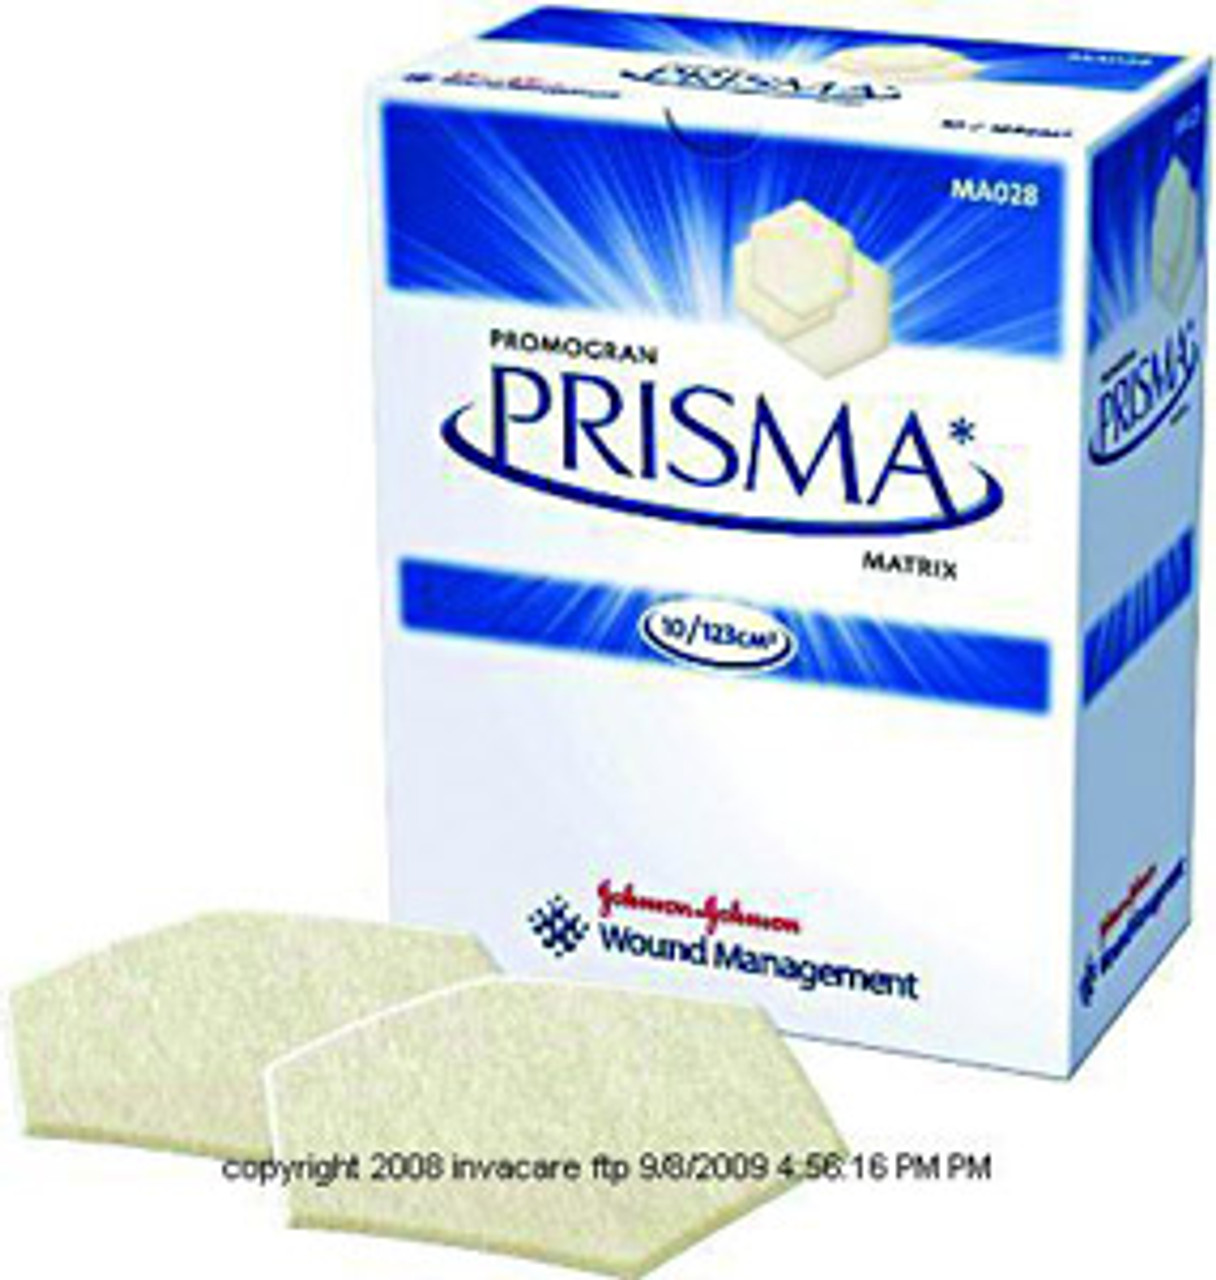 PROMOGRAN® PRISMA® Matrix